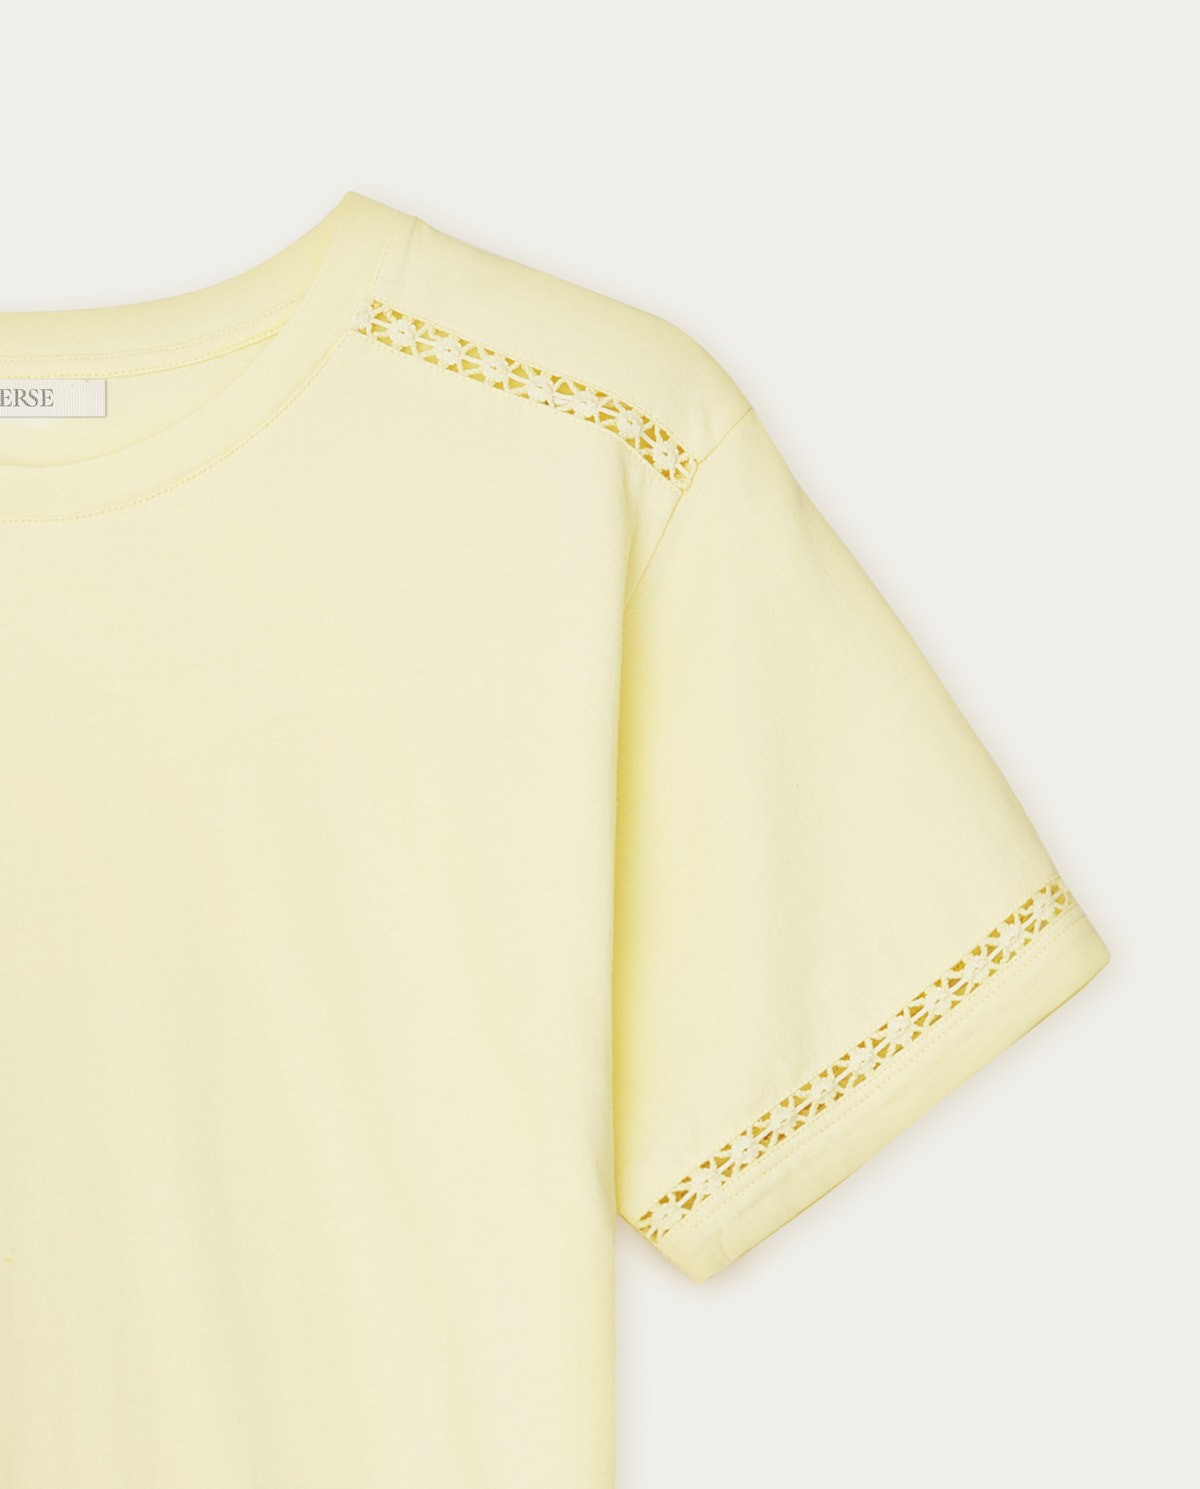 Cotton t-shirt decorative stitching Yellow 2